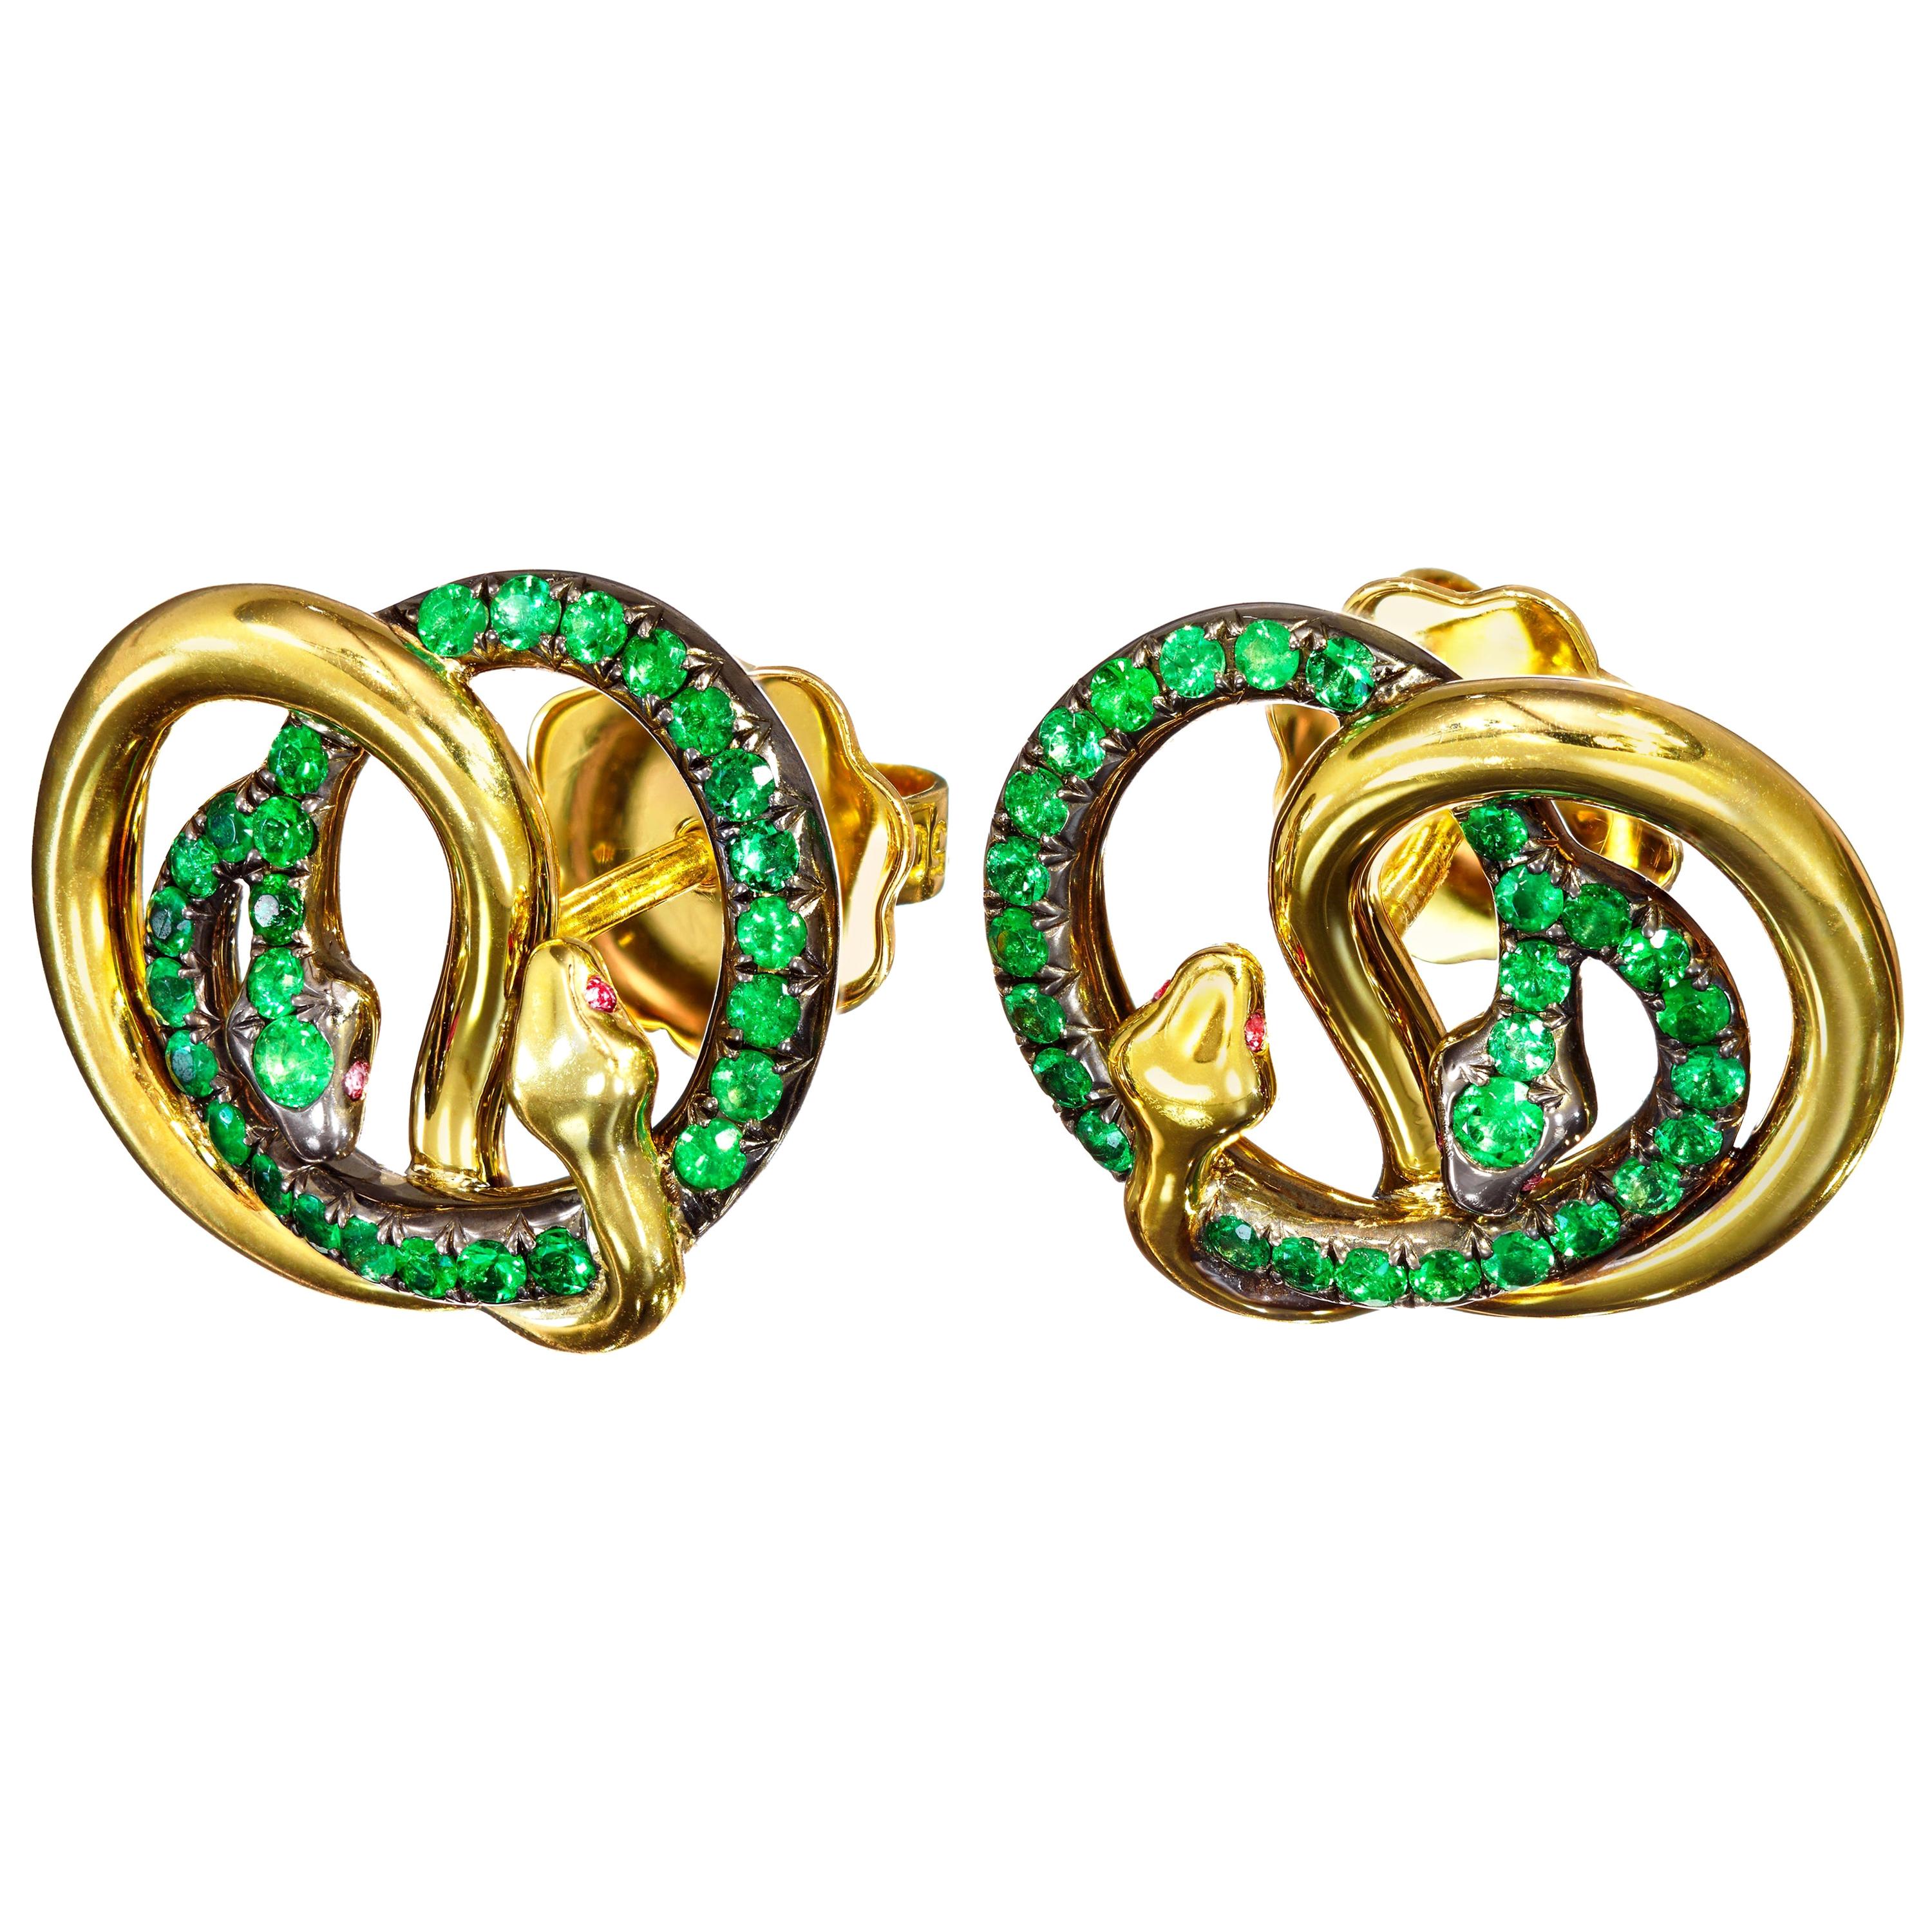 AENEA Brazilian Emeralds Rubies 18k Yellow Gold Sterling Silver Stud Earrings